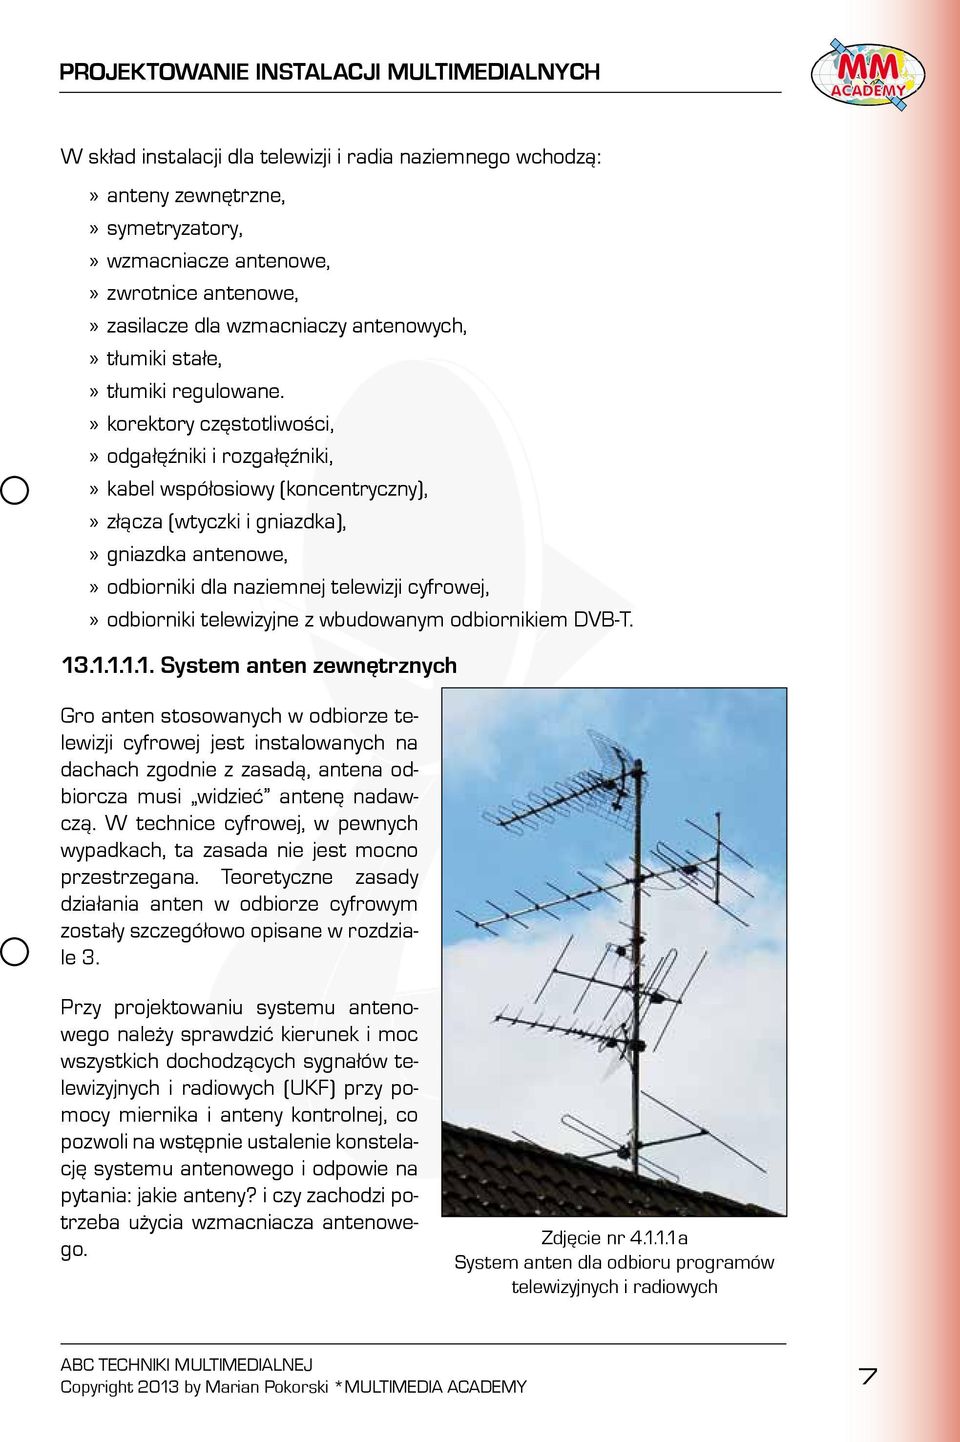 korektory częstotliwości, odgałęźniki i rozgałęźniki, kabel współosiowy (koncentryczny), złącza (wtyczki i gniazdka), gniazdka antenowe, odbiorniki dla naziemnej telewizji cyfrowej, odbiorniki